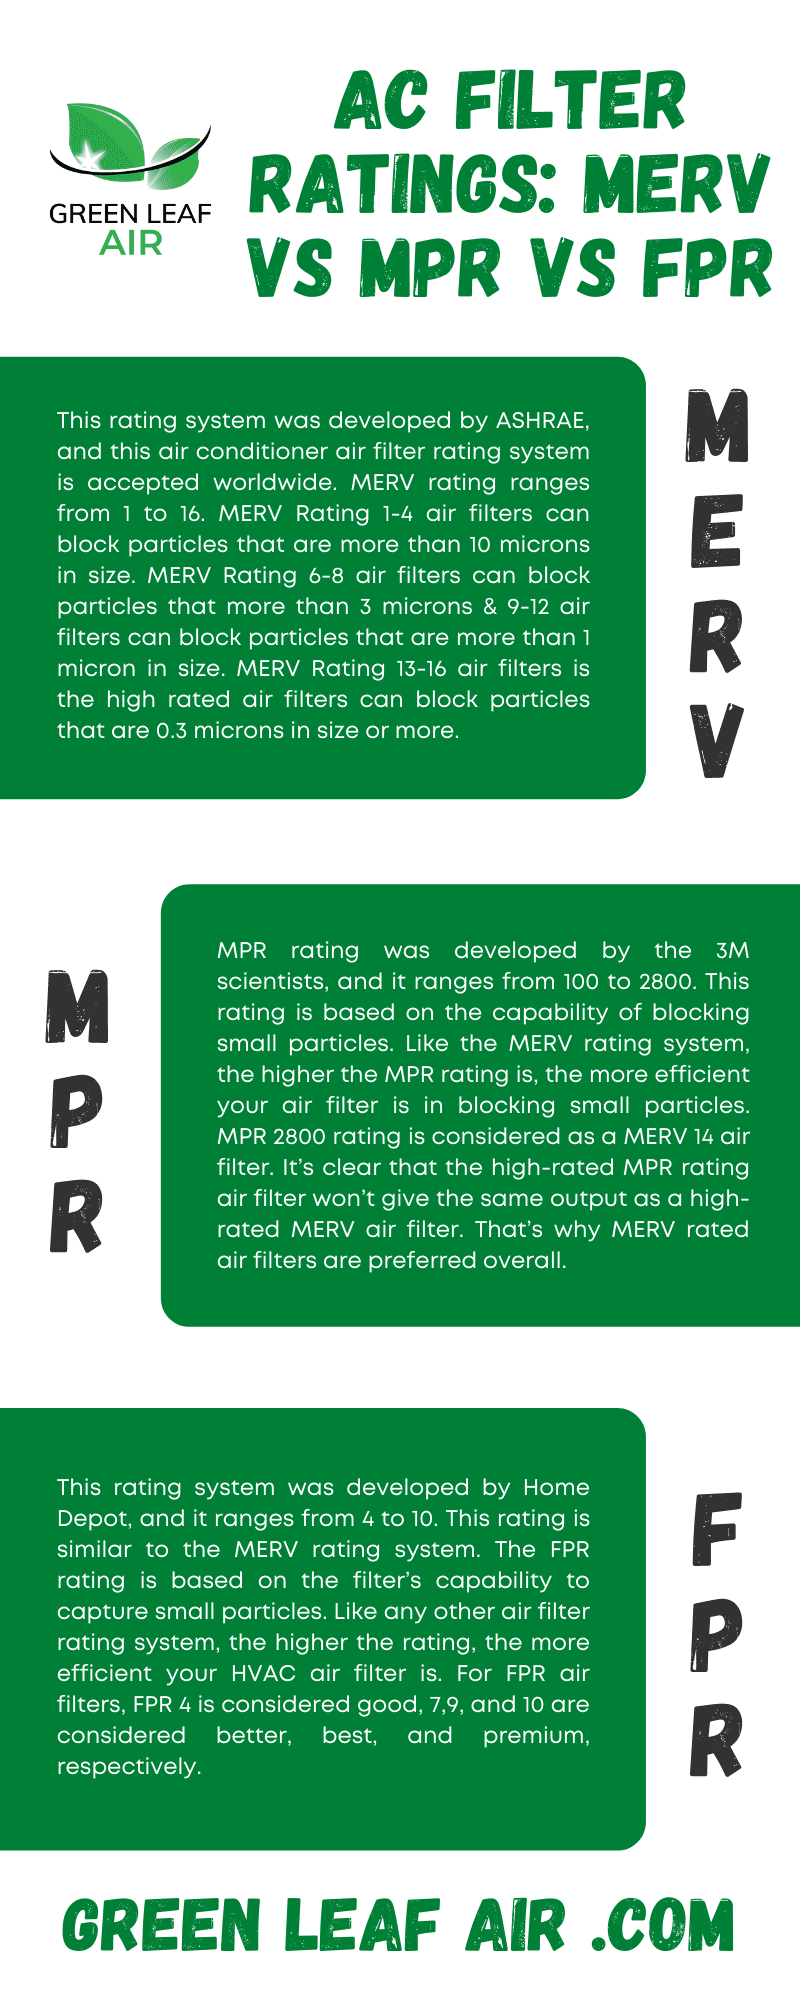 AC Filter Ratings: MERV vs MPR vs FPR